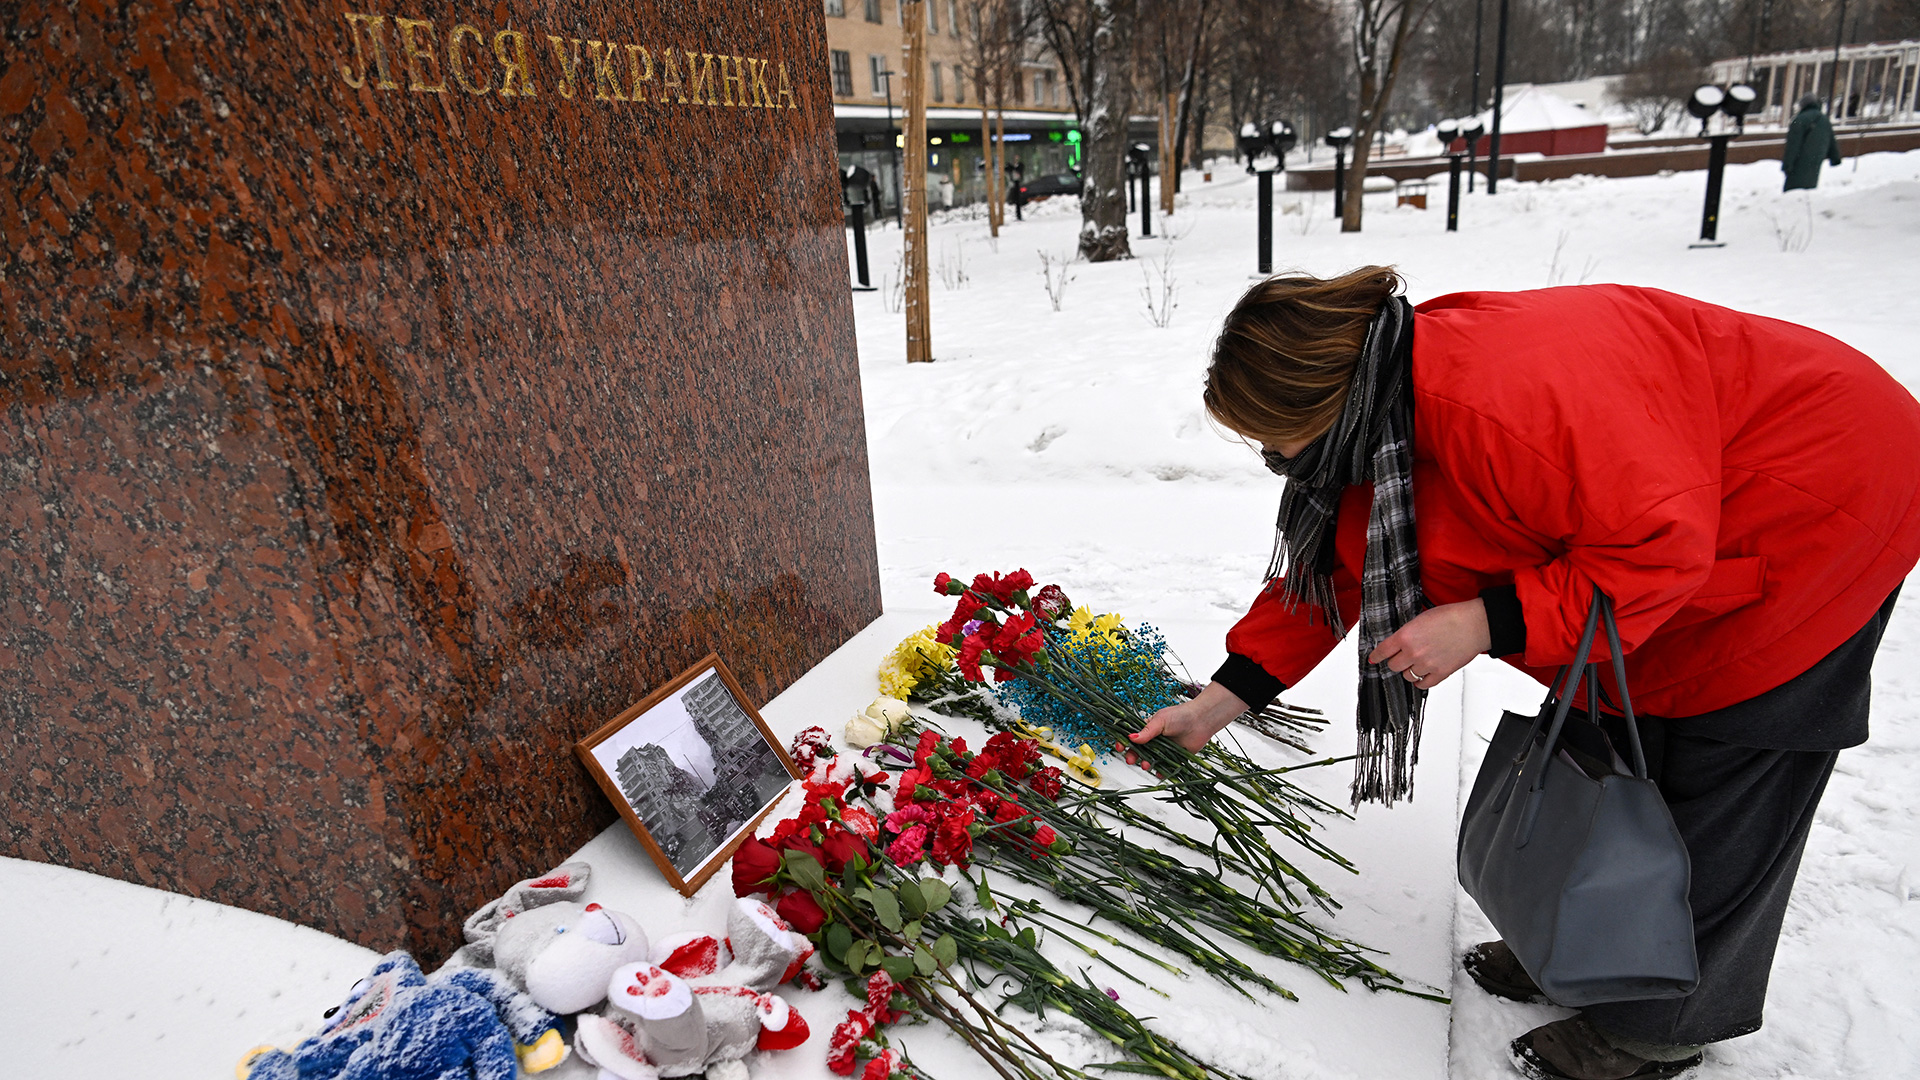 Cuatro personas fueron detenidas en Rusia por rendir homenaje a las víctimas en Ucrania